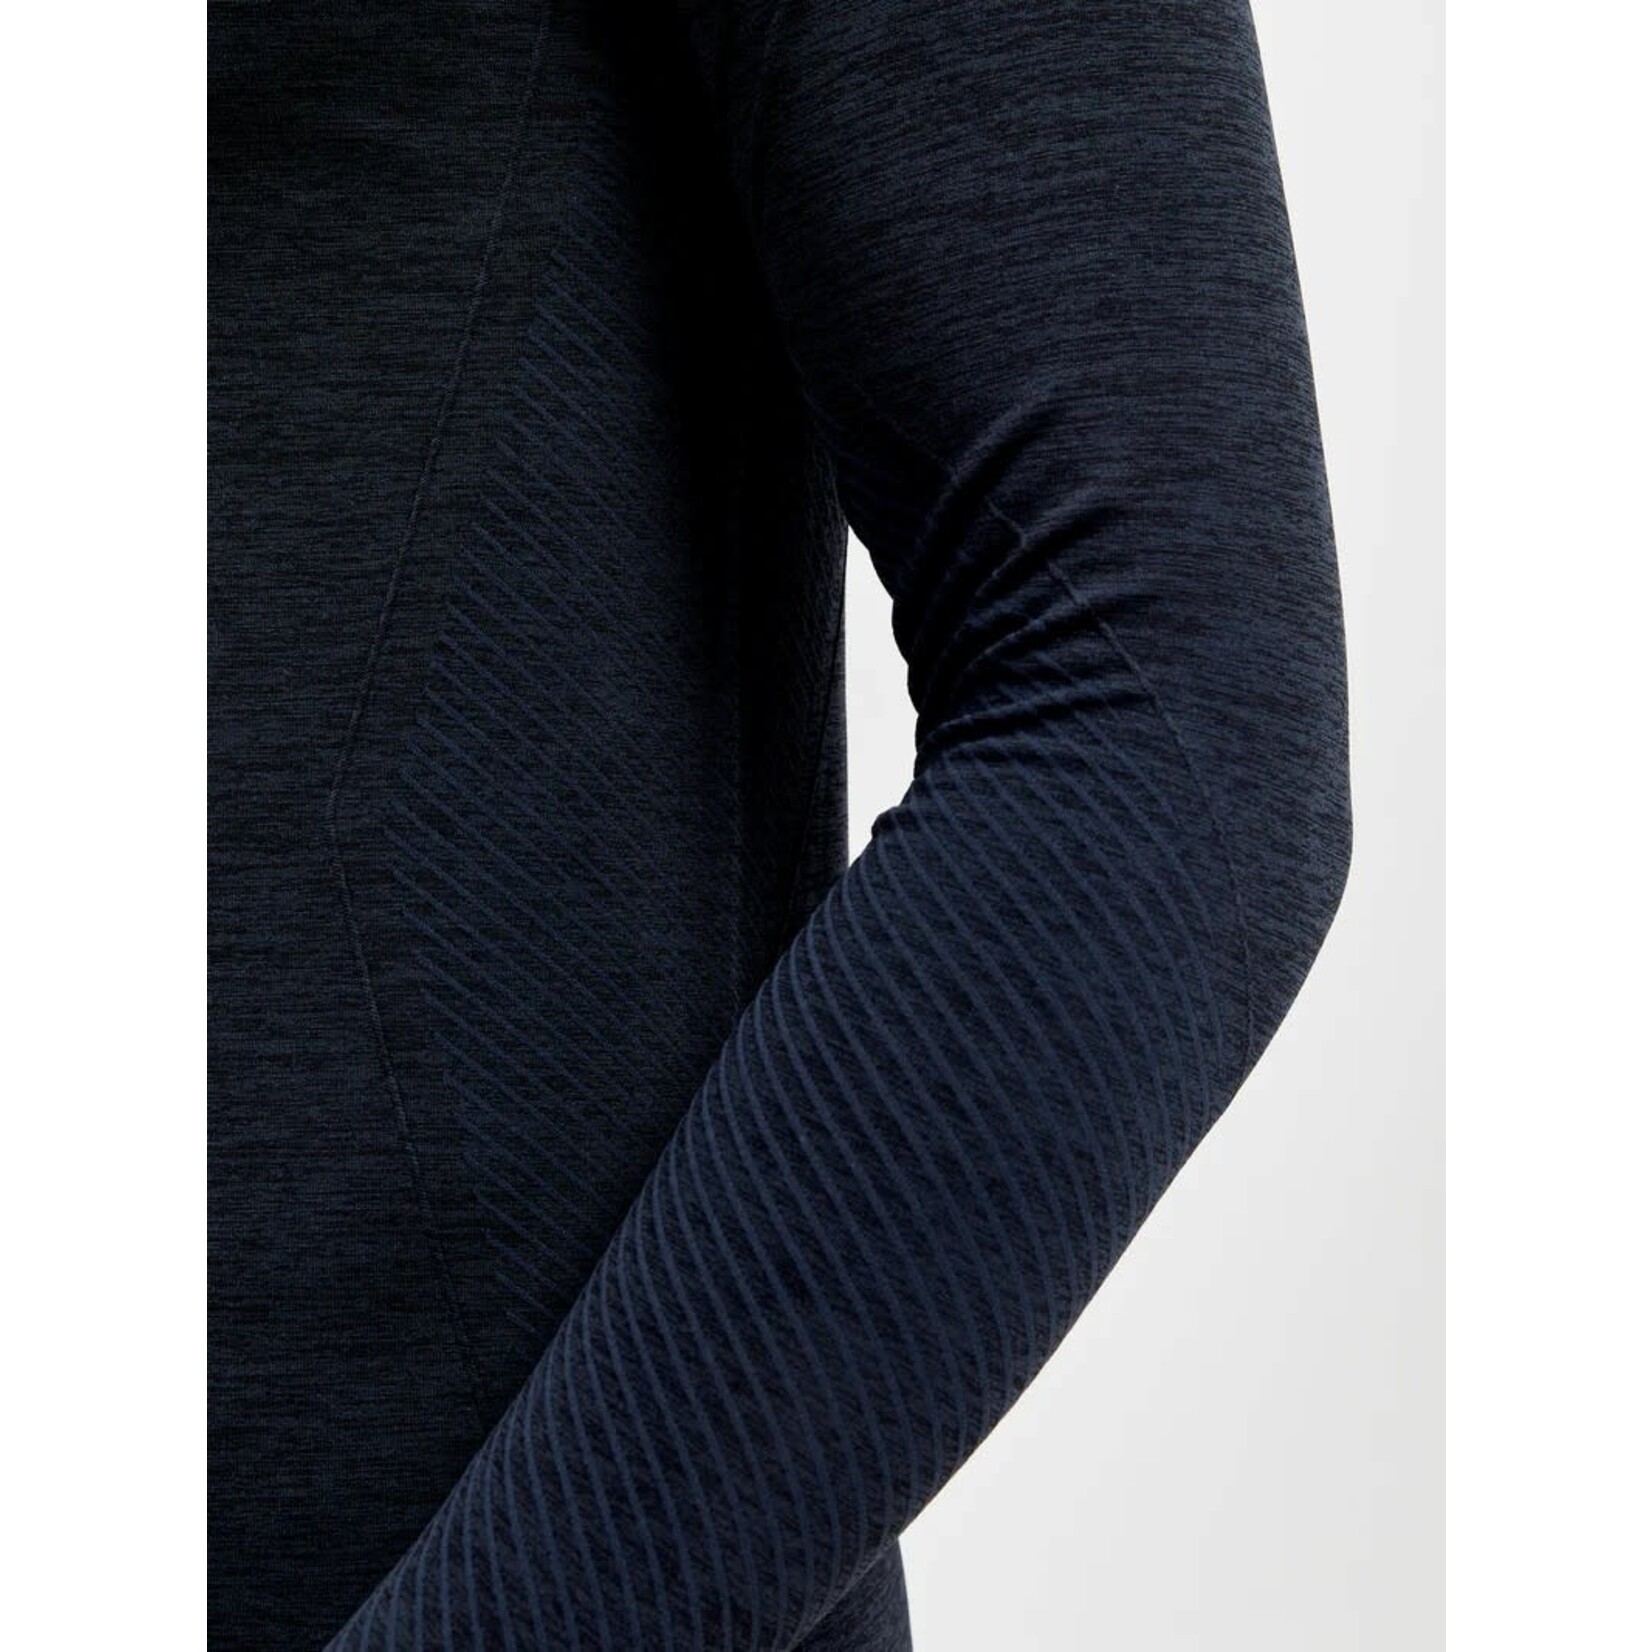 Craft Camisole à manches longues avec demi zip CORE Dry Active Comfort HZ pour hommes